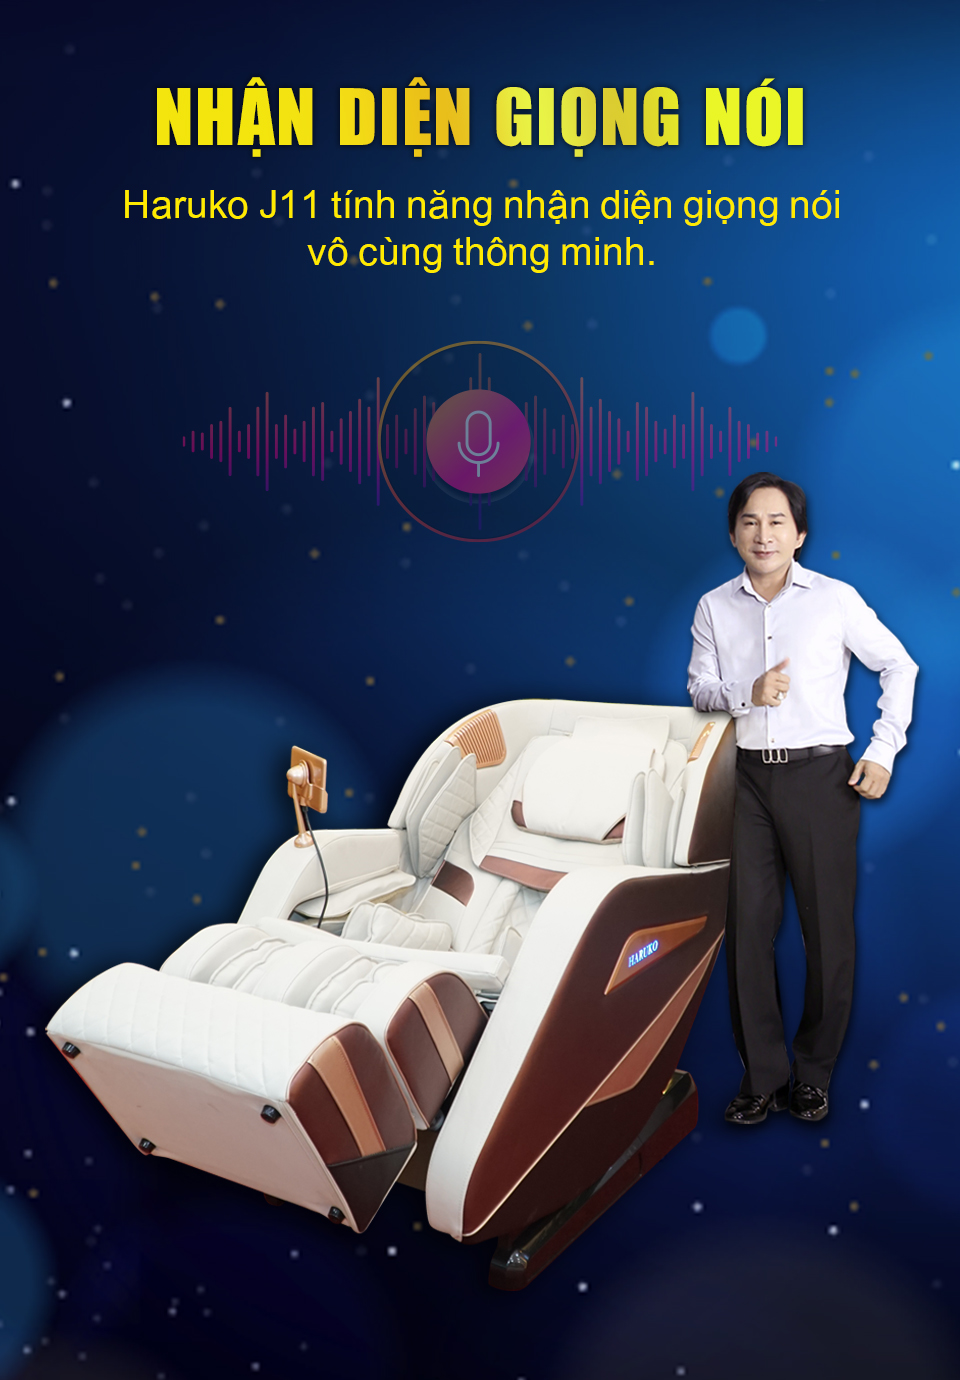 Haruko J11 còn sở hữu tính năng nhận diện giọng nói Tiếng Việt dễ dàng sử dụng với mọi lứa tuổi